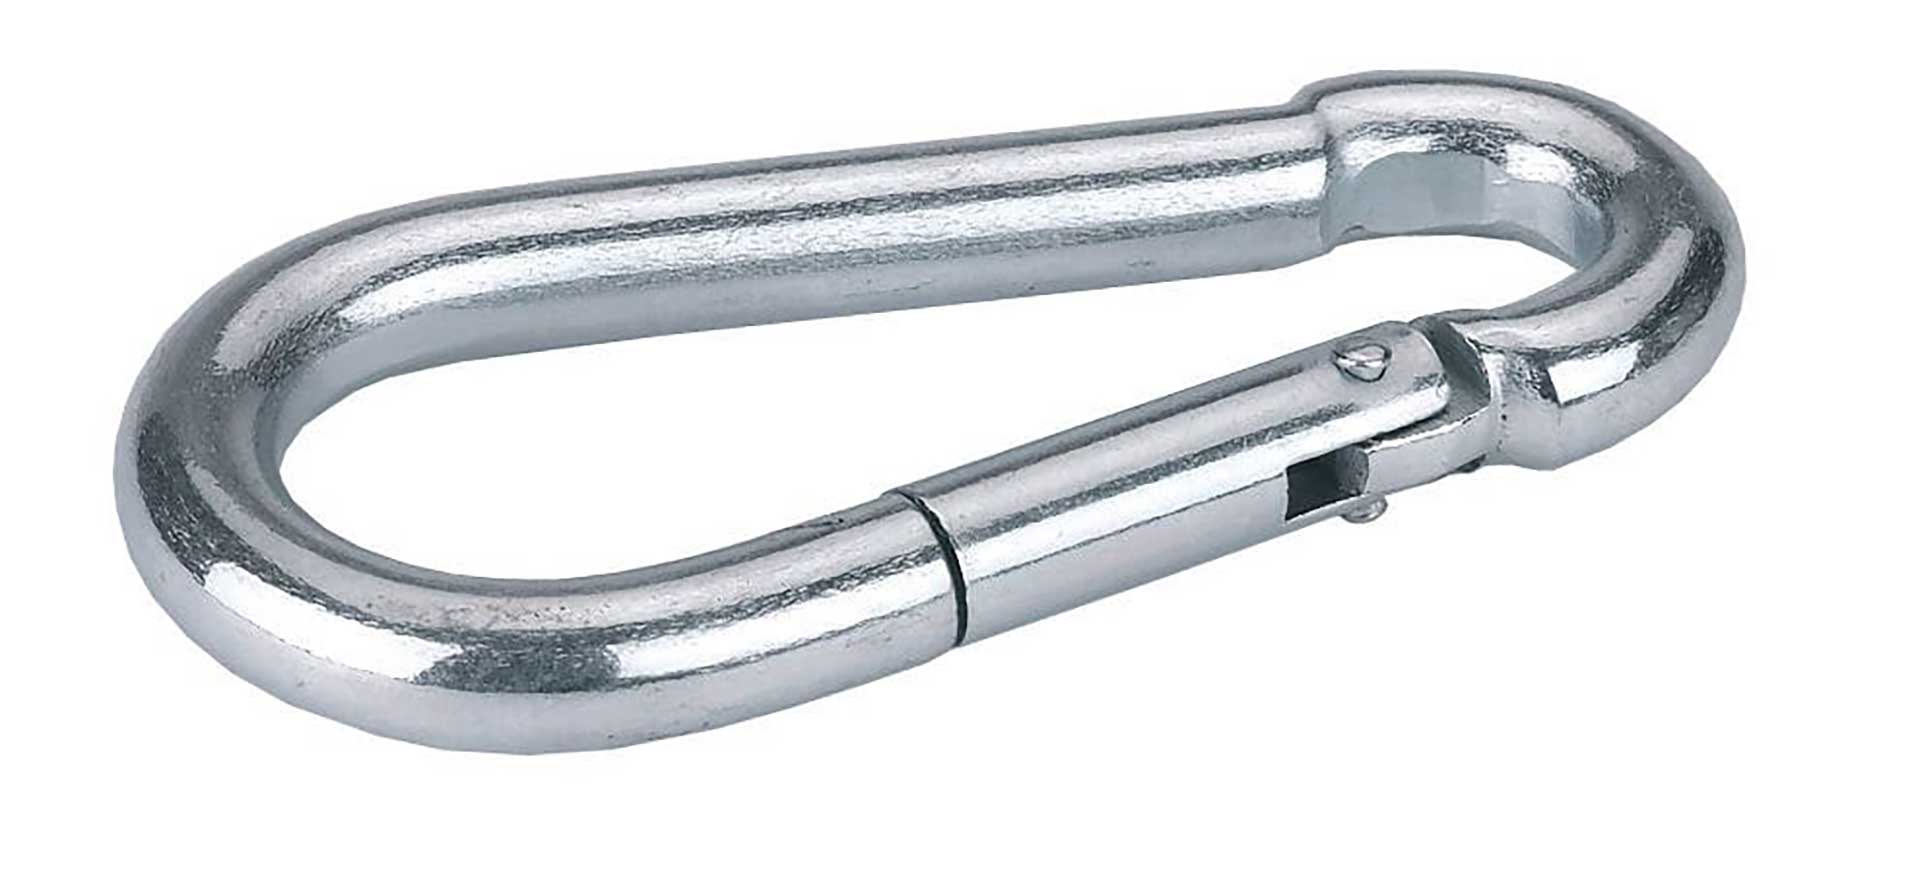 6x Carabiner Hooks galvanized